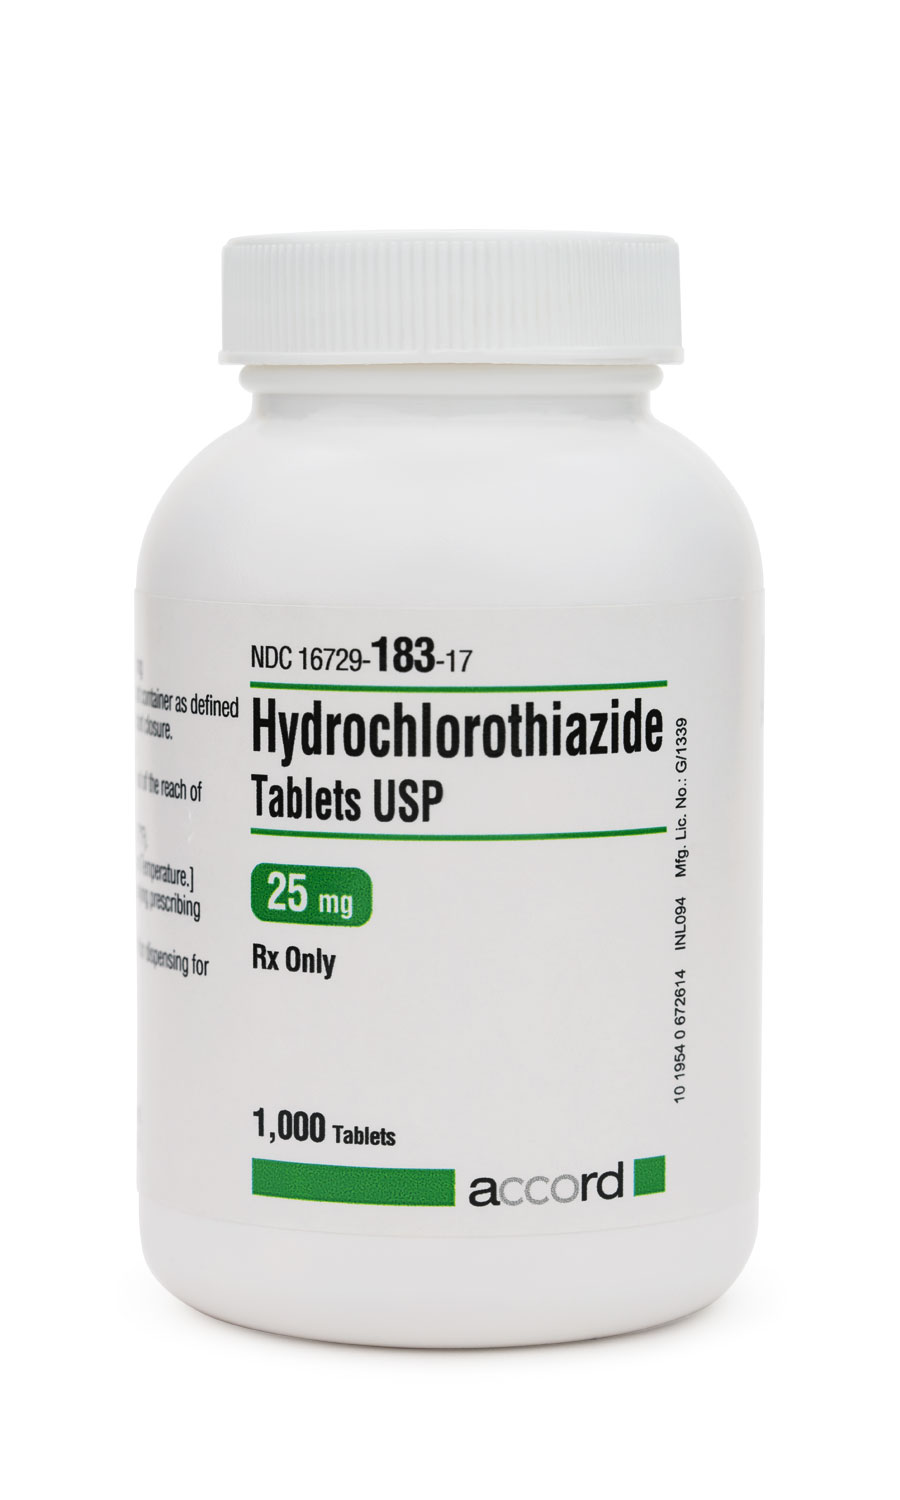 Hydrochlorothiazide pills